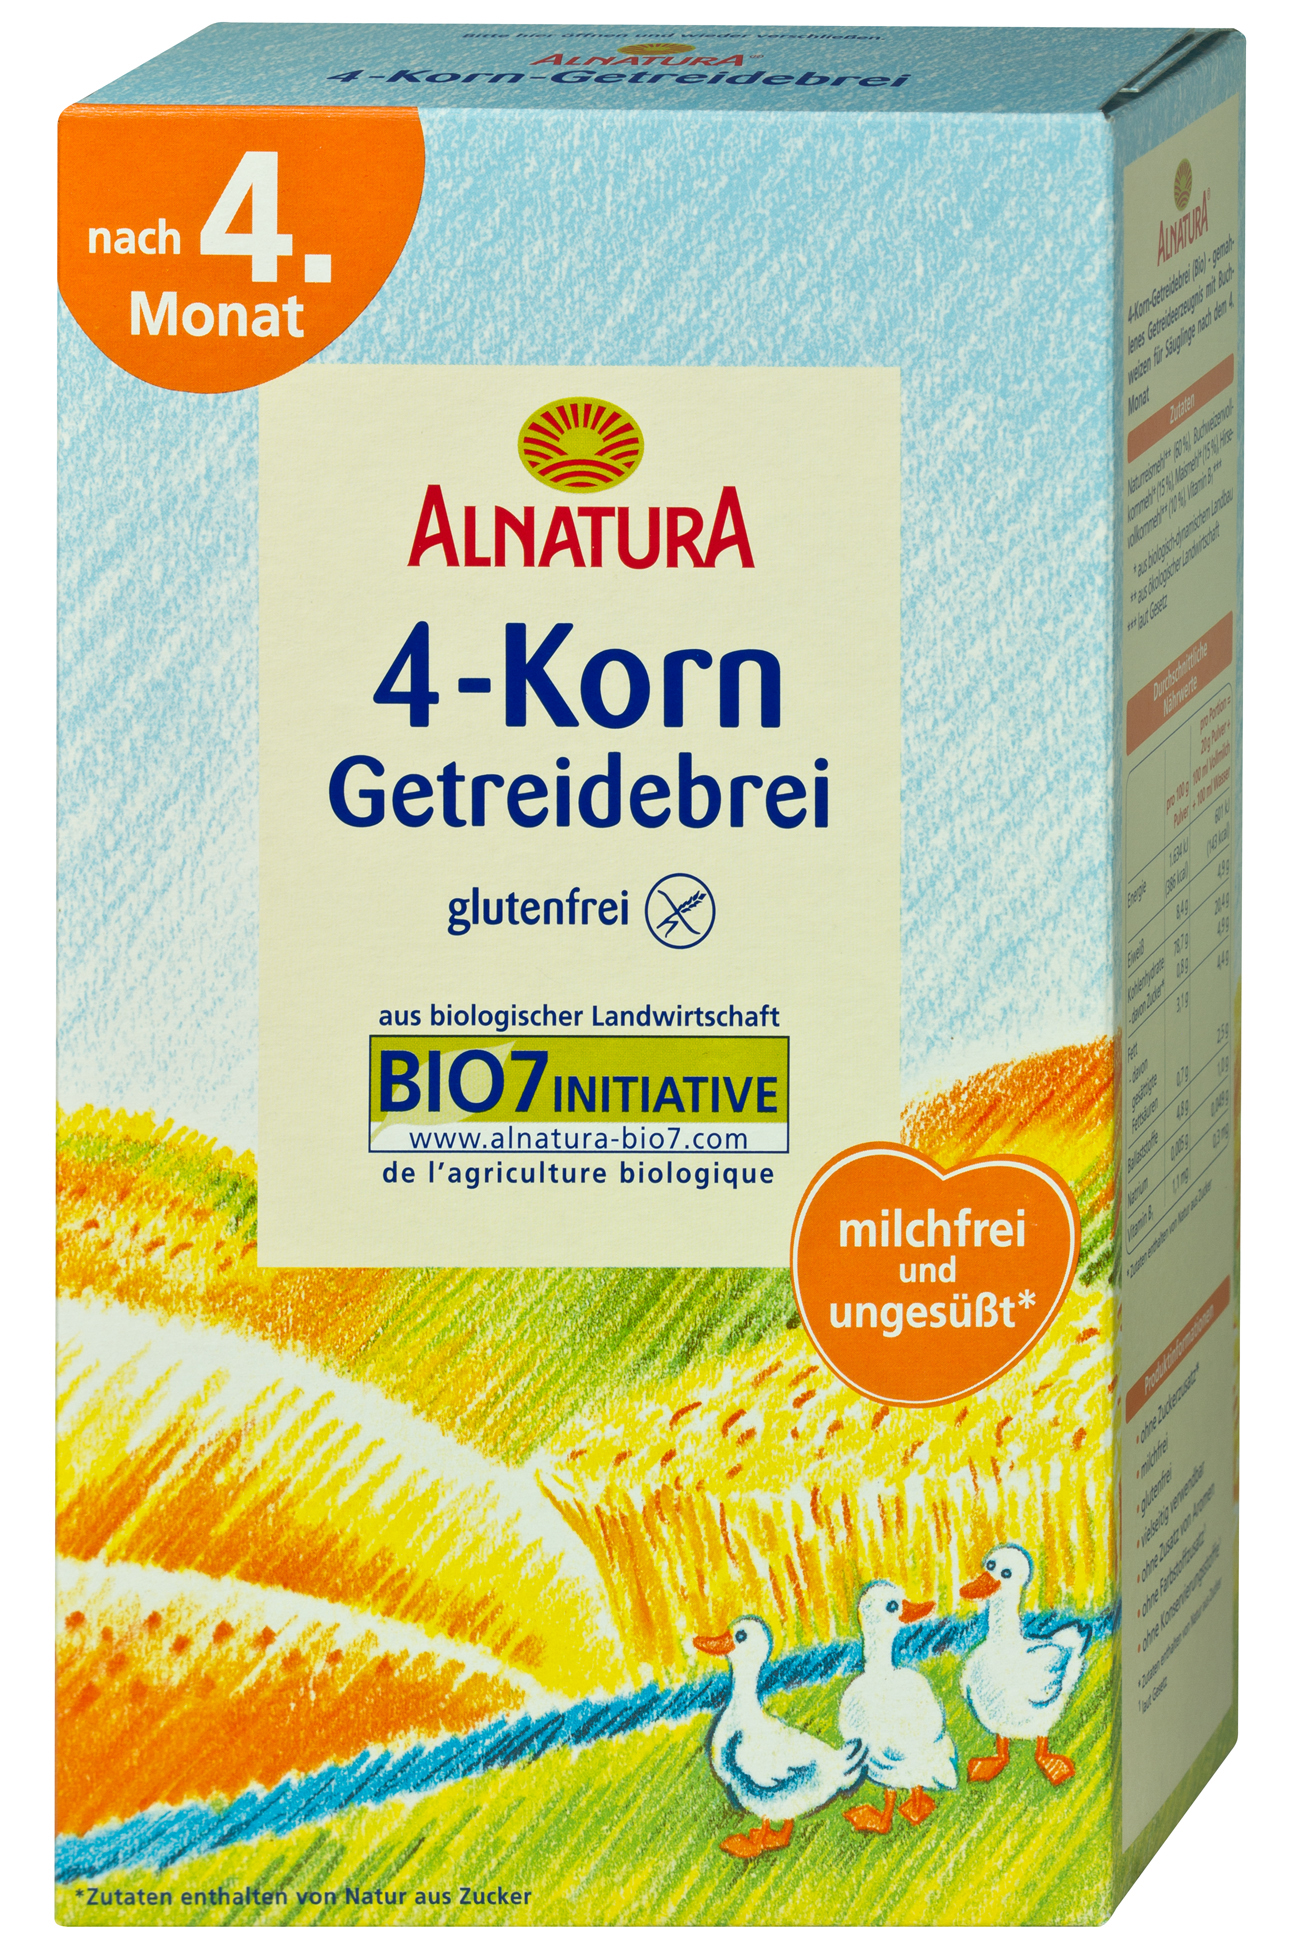 In Alnatura 4-Korn Getreidebrei wurden Spuren des Pflanzeninhaltsstoffes Tropanalkaloide (TA) nachgewiesen, deshalb ruft der Hersteller das Produkt zurück. (Foto: Alnatura)